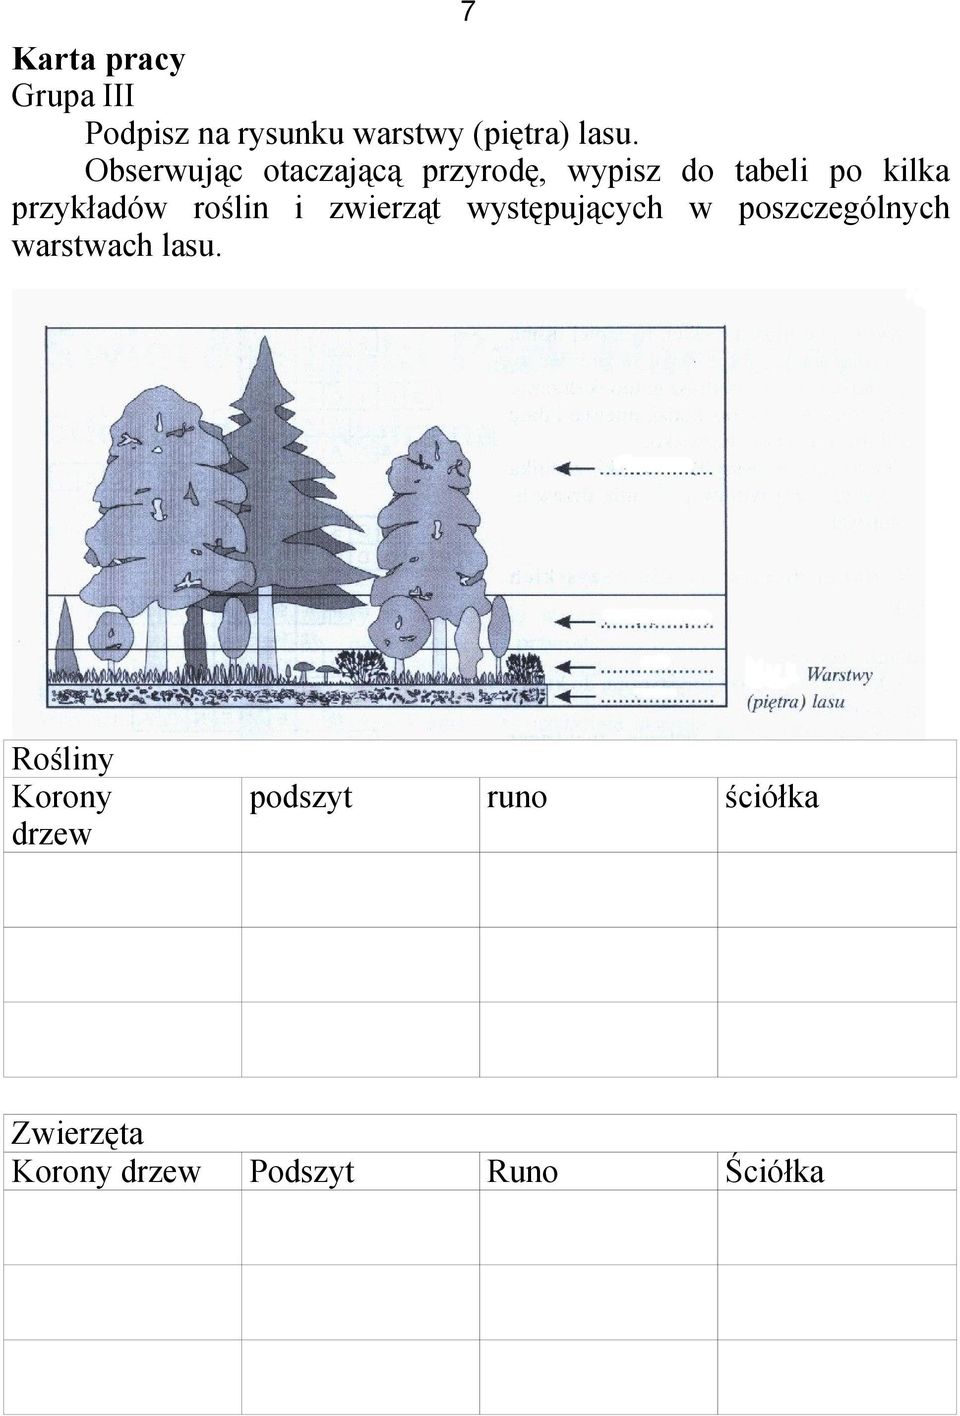 roślin i zwierząt występujących w poszczególnych warstwach lasu.